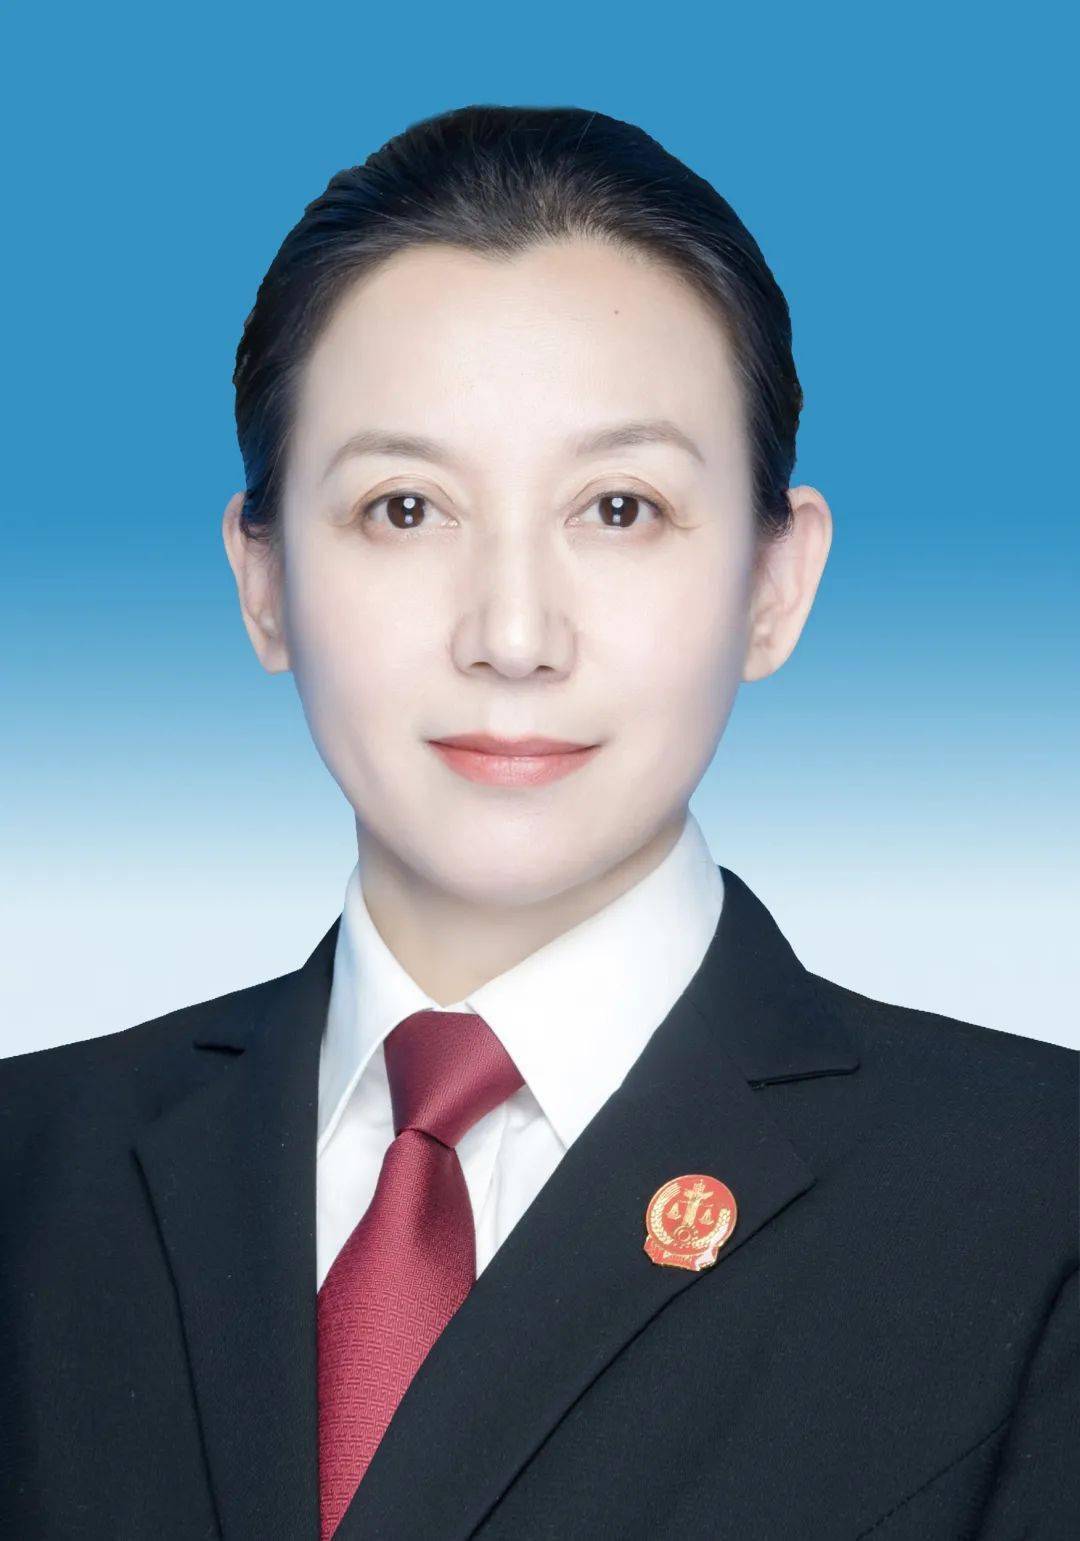 刘 娟女,汉族,1974年4月生,大学,法律硕士,中共党员,现任安康市中级